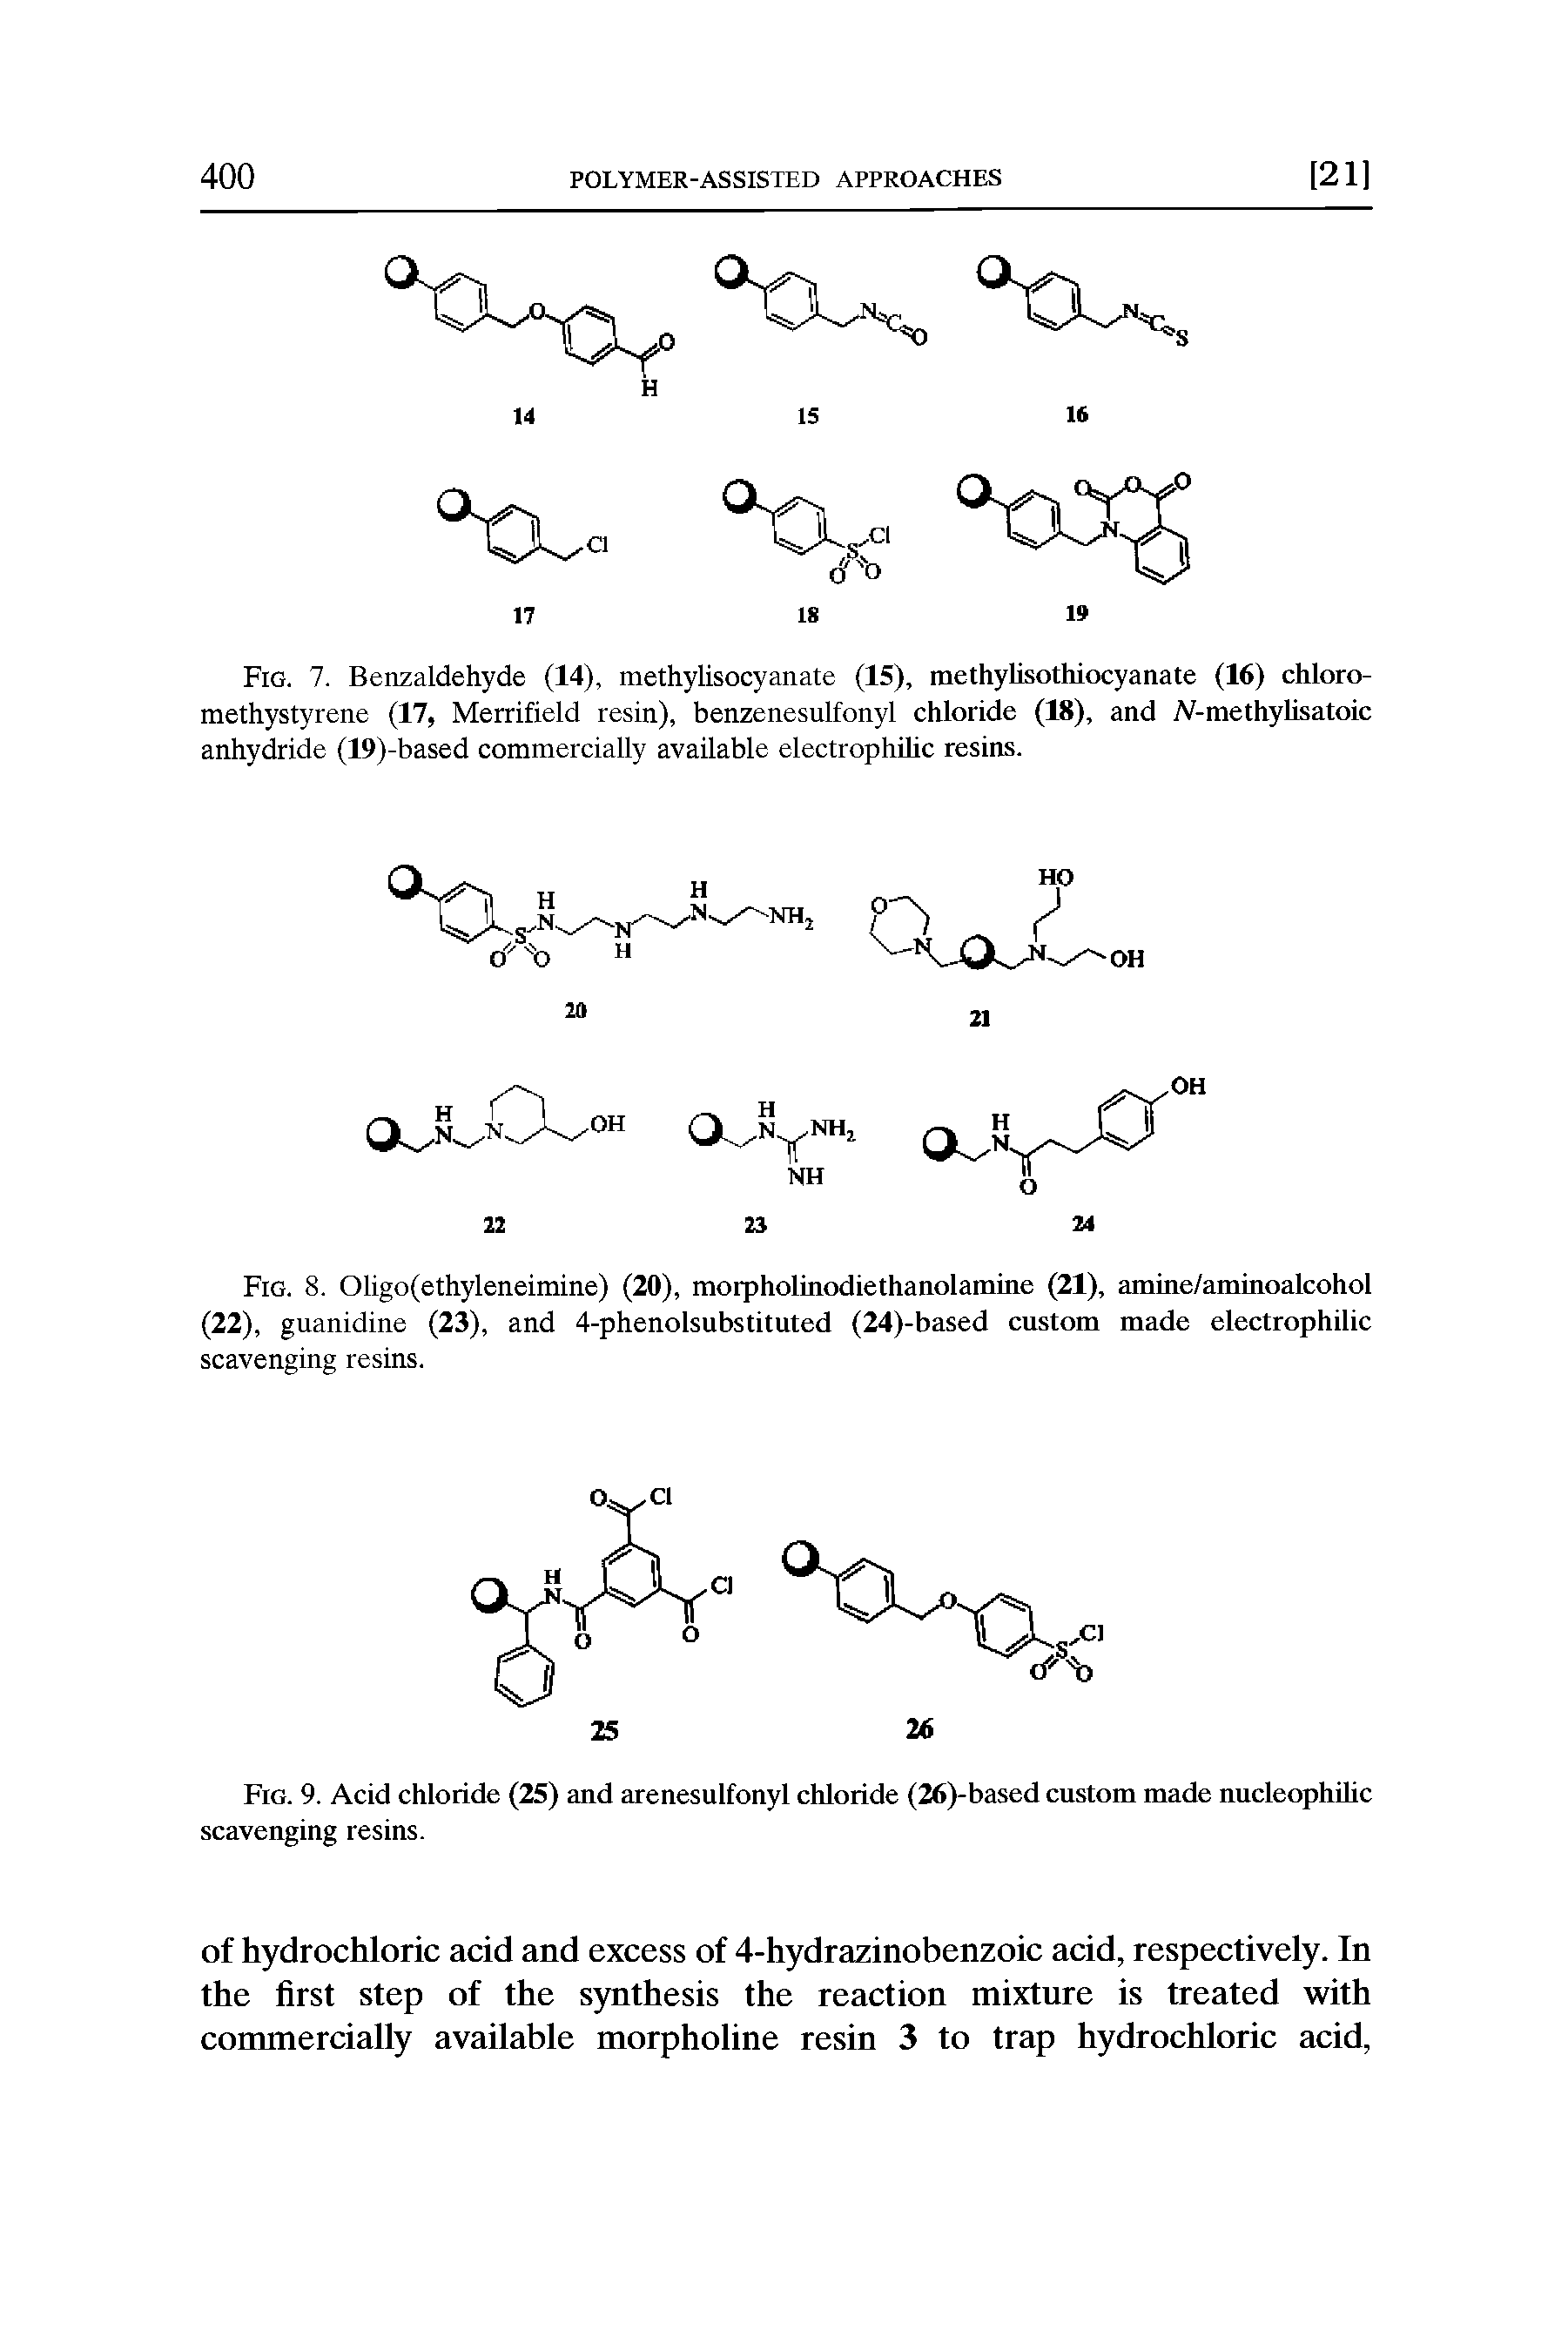 Fig. 8. Oligo(ethyleneimine) (20), morpholinodiethanolamine (21), amine/aminoalcohol (22), guanidine (23), and 4-phenolsubstituted (24)-based custom made electrophilic scavenging resins.